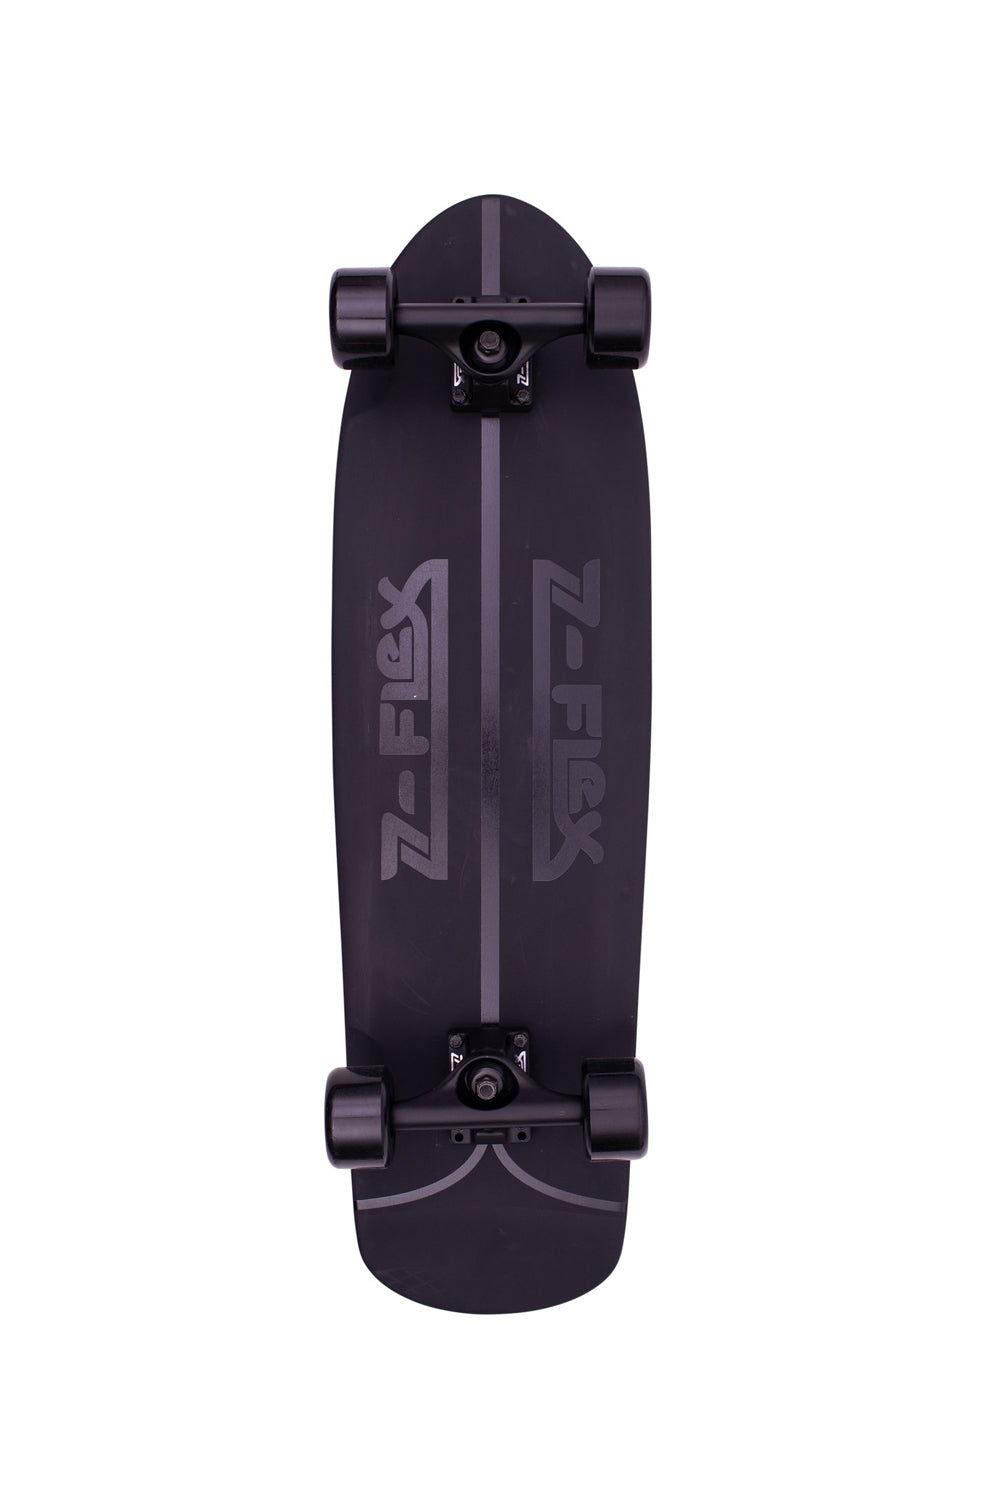 Z Flex Skateboards | Z Flex Shadow Lurker Shorebreak 30" Skateboard 